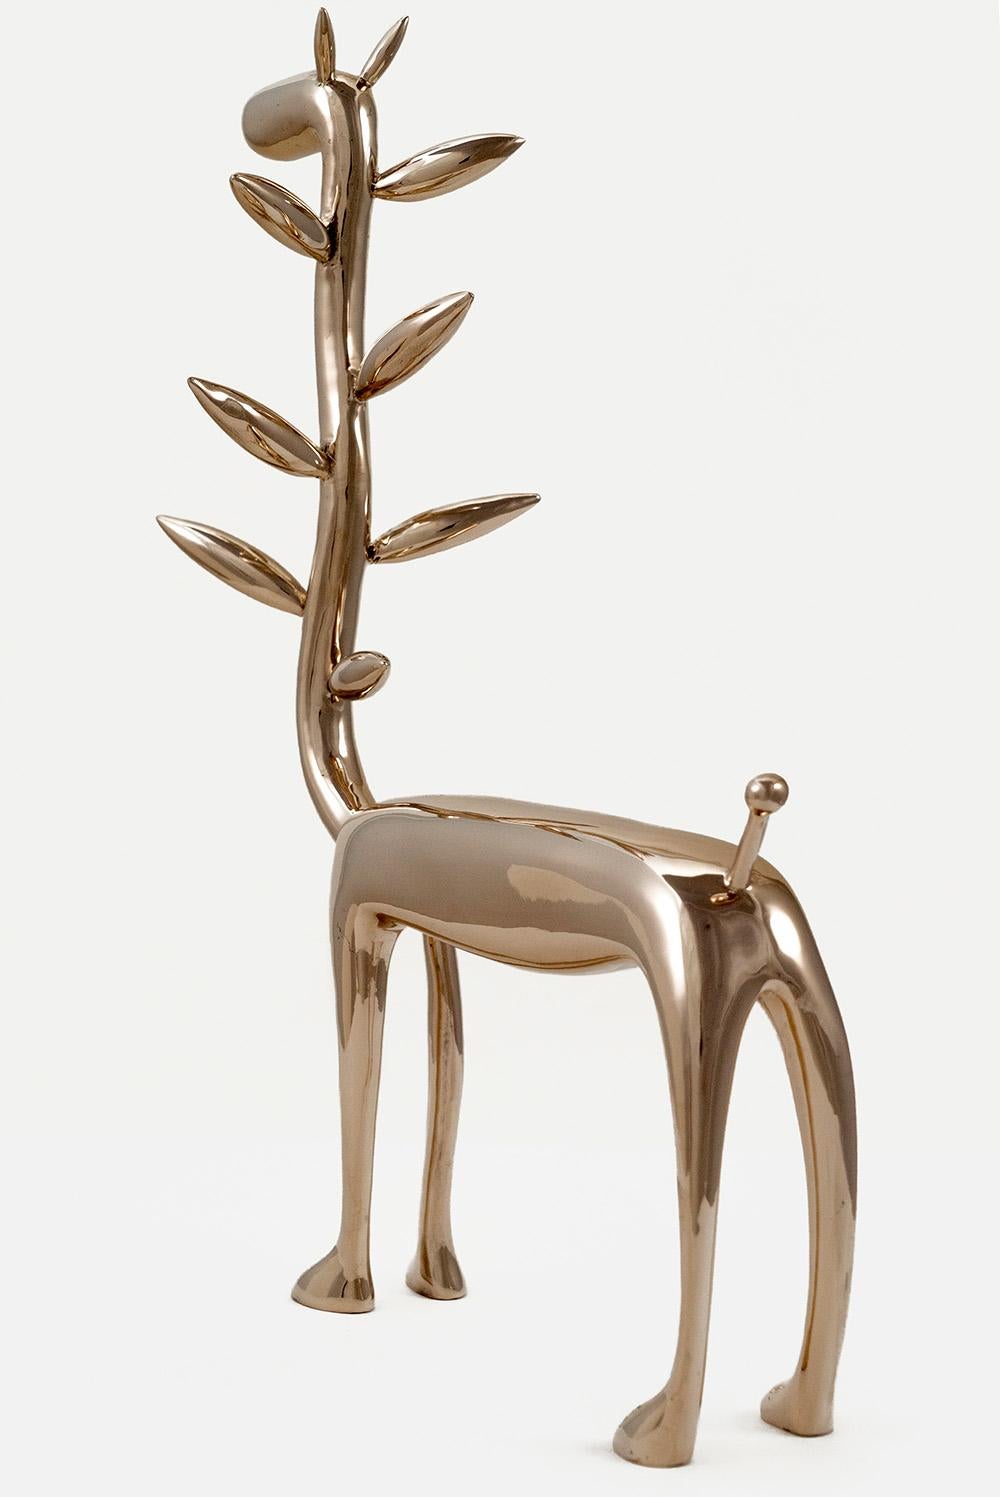 Pflanzgefäßiraffe von Marcelo M. Burgos – Skulptur aus polierter Bronze, golden, Giraffen (Zeitgenössisch), Sculpture, von Marcelo Martin Burgos